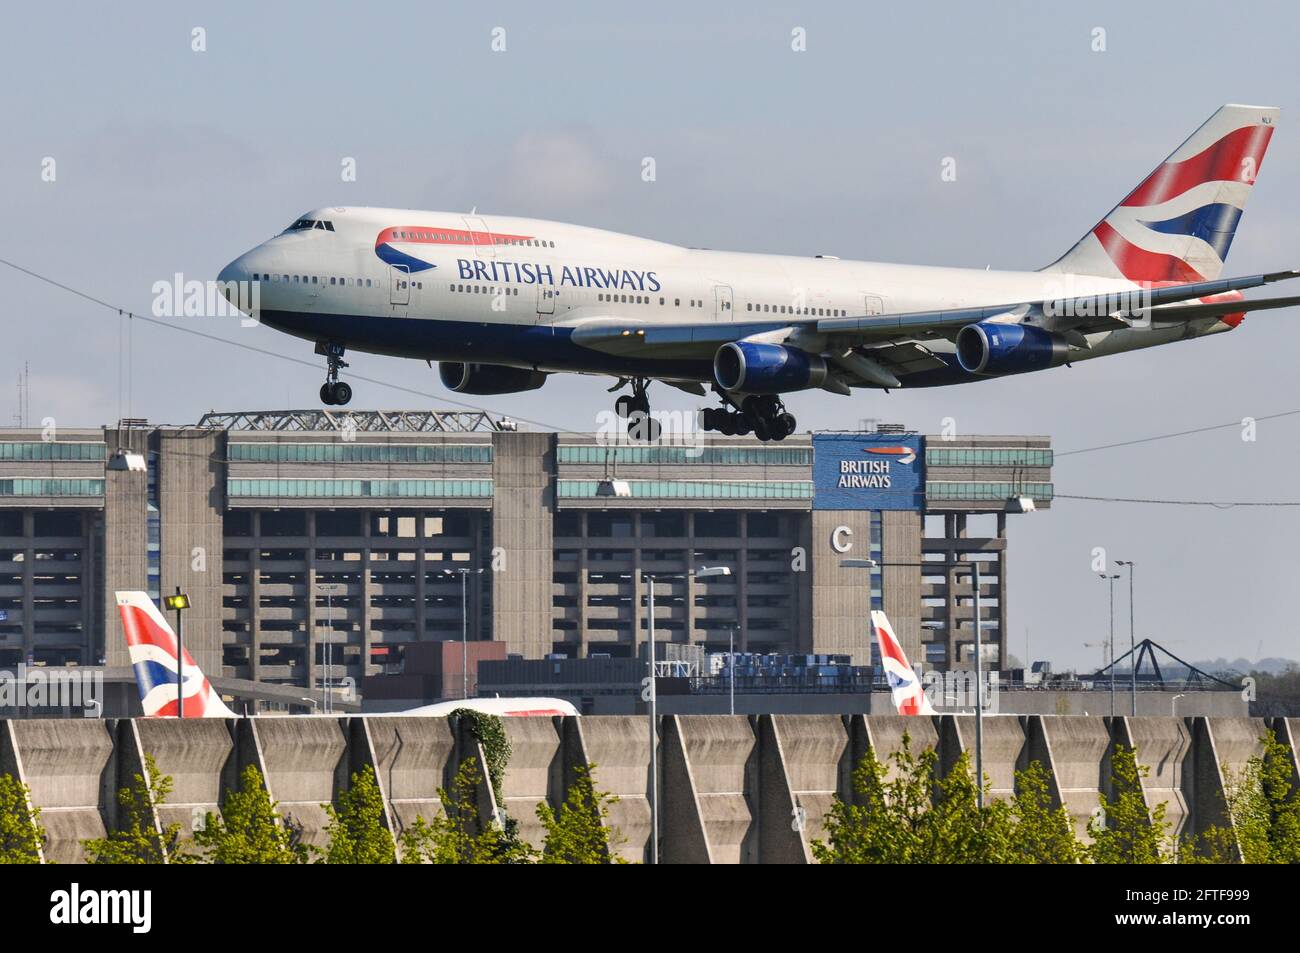 British Airways Boeing 747 Jumbo Jet Plane G-BNLV atterrando all'aeroporto Heathrow di Londra, Regno Unito, sopra l'hangar della base di manutenzione della British Airways Foto Stock